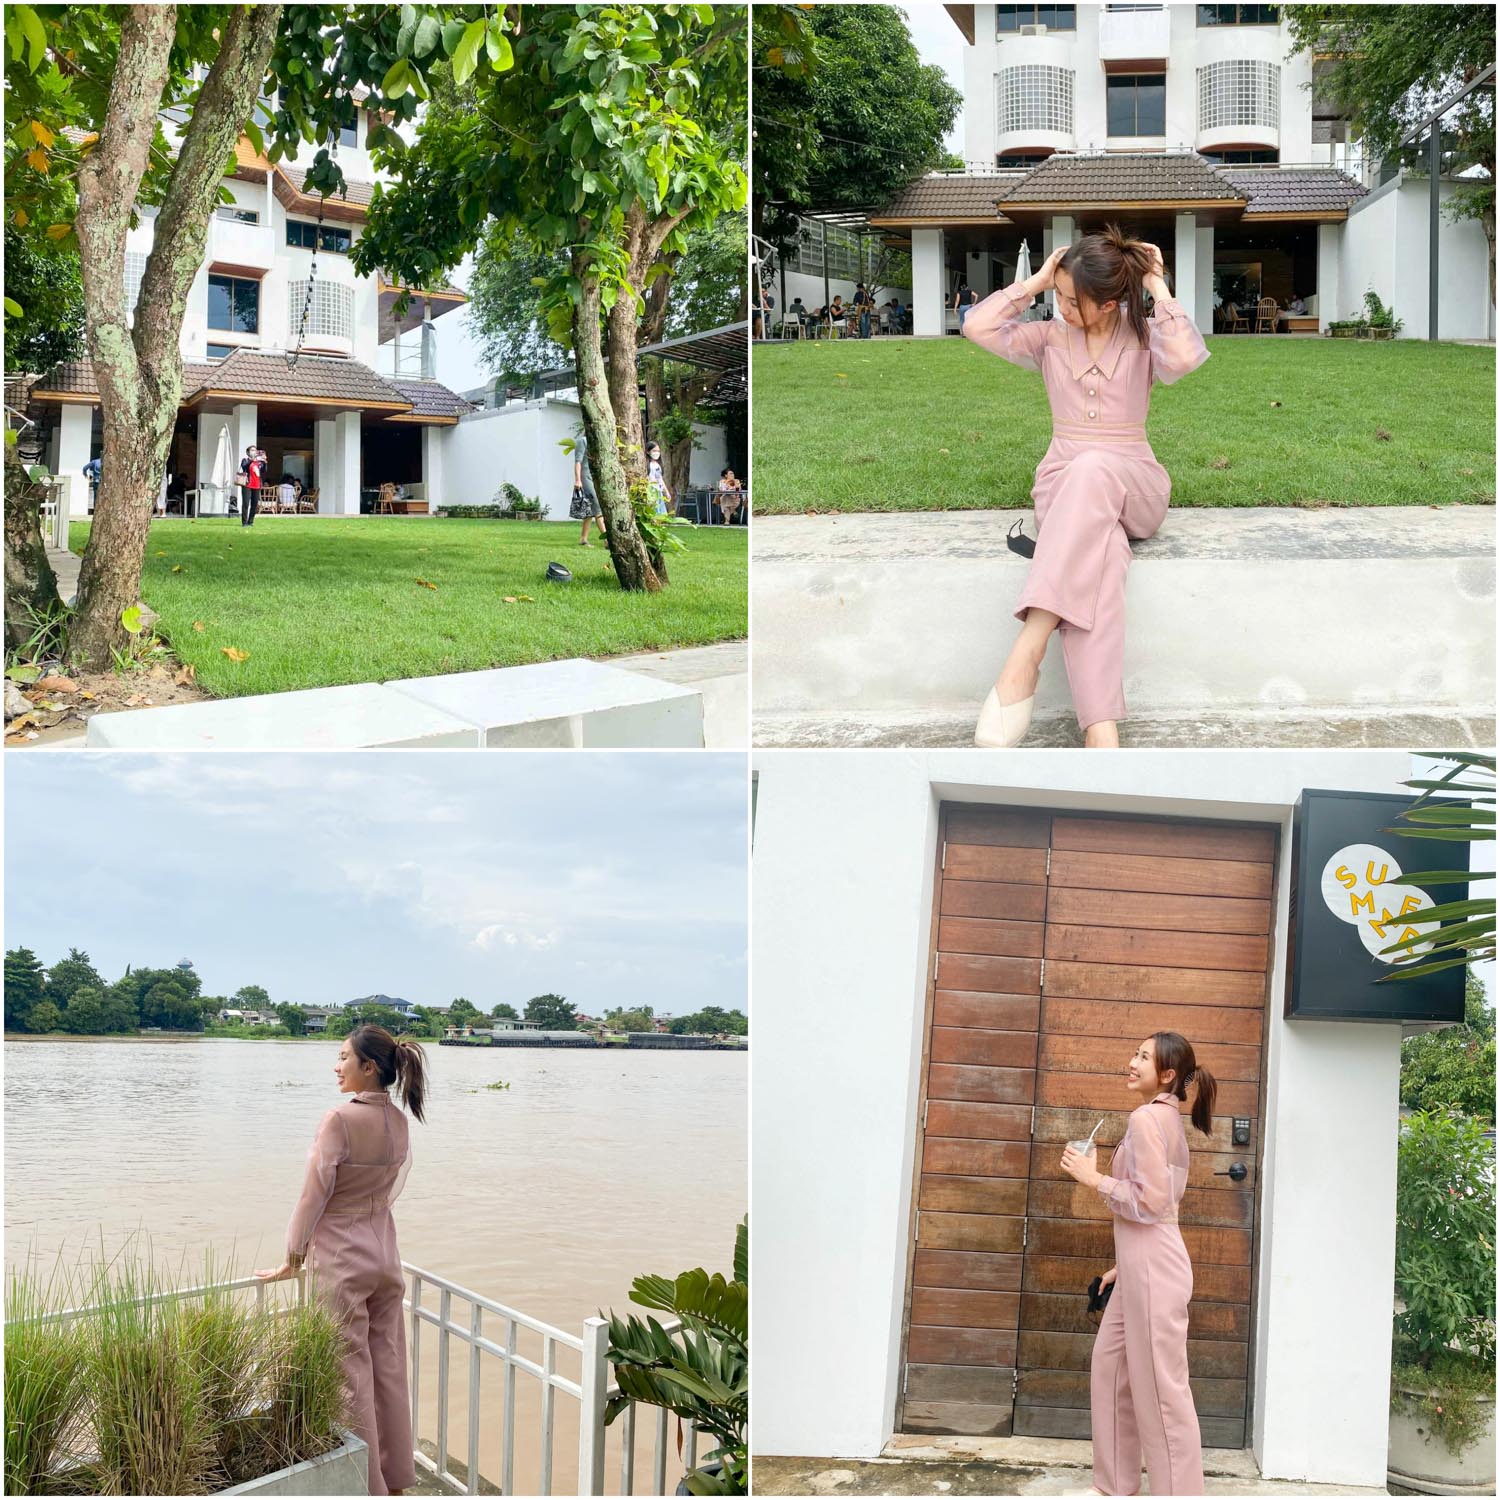 The Summer House Ayutthaya ร้านอาหารคาเฟ่ริมน้ำเจ้าพระยา บรรยากาศดี กว้างขวาง มานั่งรับลมชมแม่น้ำชิวๆ